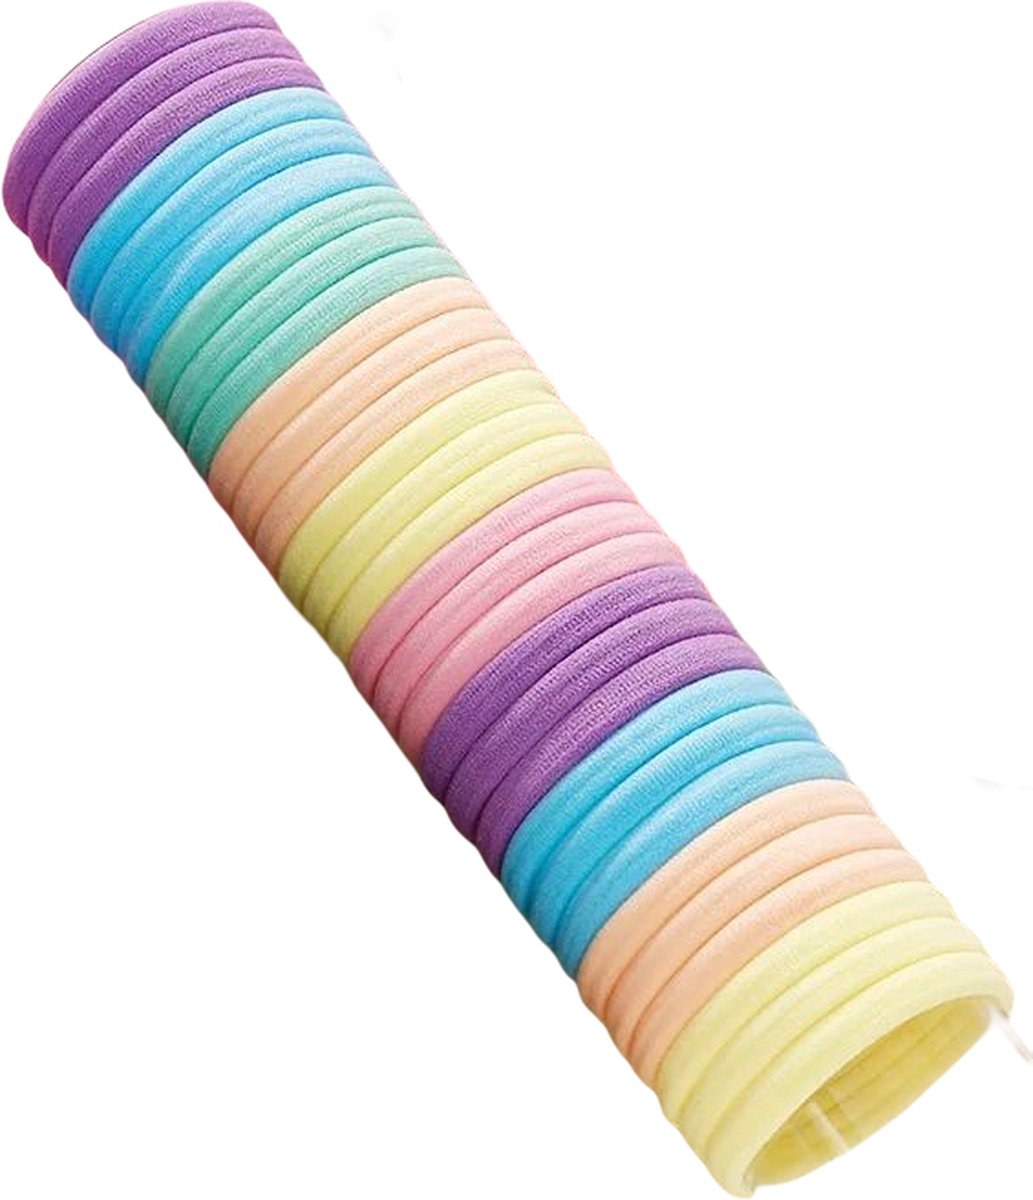 Elastiekjes 50 stuks | Pastel Haar Elastieken | elastisch | hoge kwaliteit haarelastiekjes | Oranje Paars Roze Geel Blauw | Sparkolia